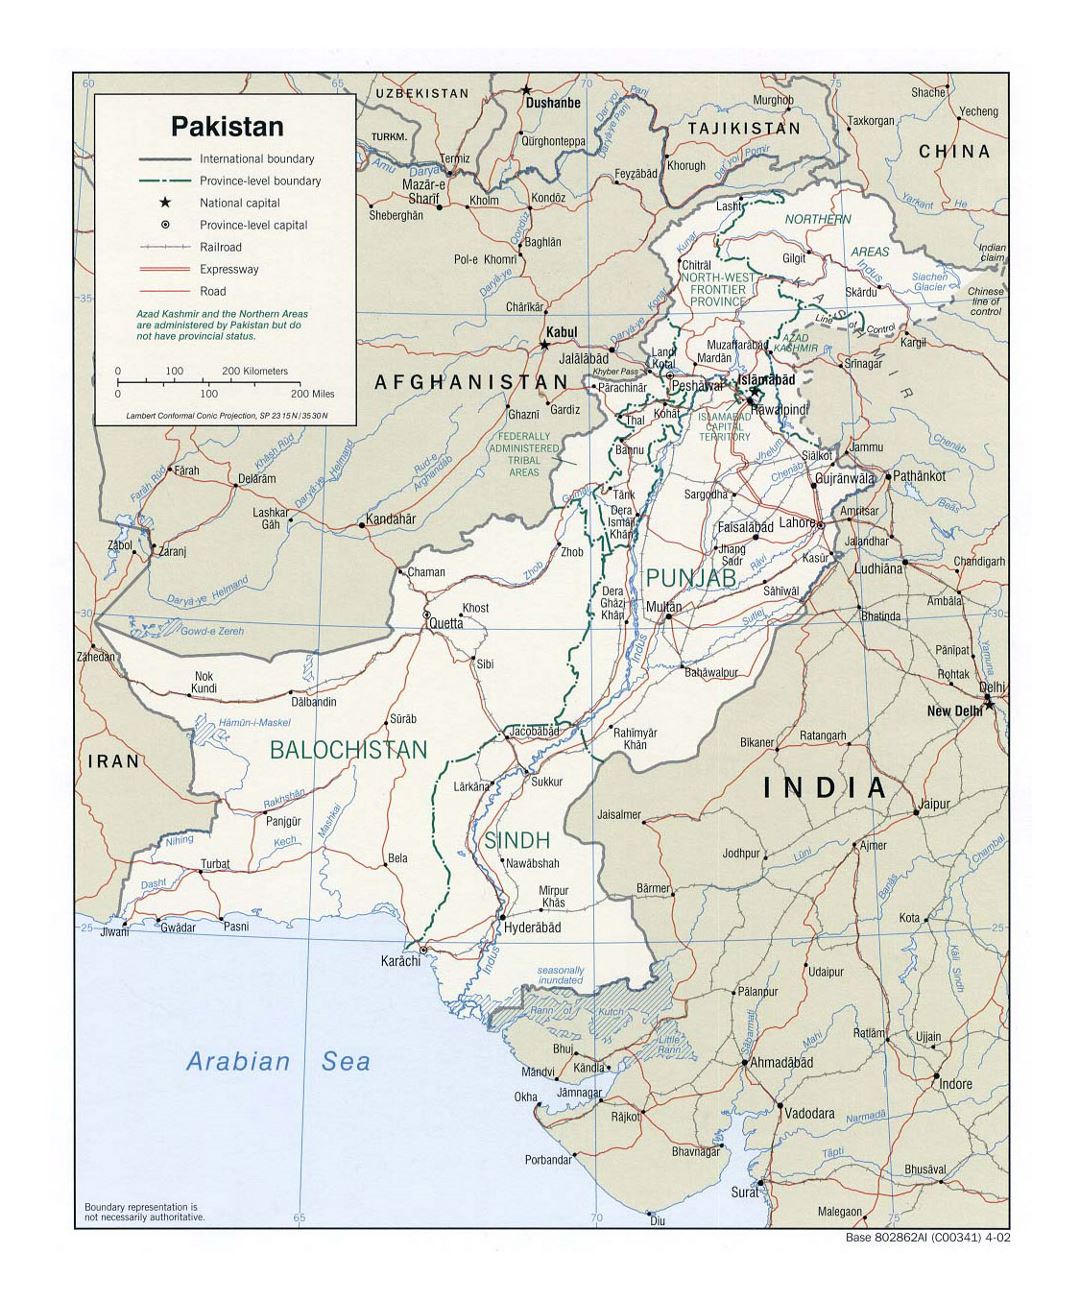 Детальная политическая и административная карта Пакистана с дорогами, железными дорогами и крупными городами - 2002